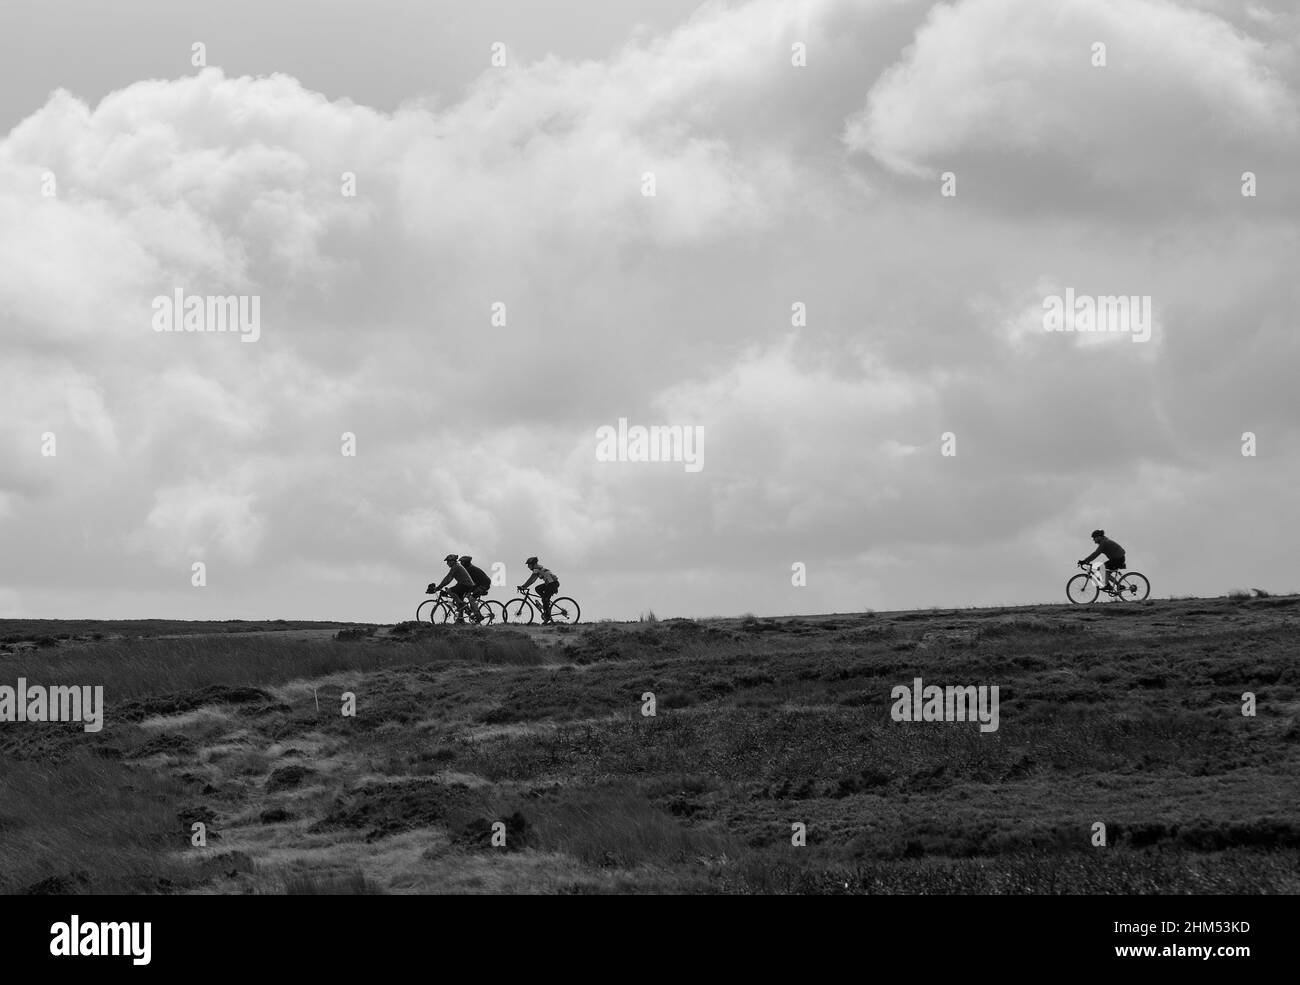 Image en noir et blanc de quatre cyclistes en silhouette et à l'horizon lorsqu'ils traversent des landes ouvertes en toile de fond de nuages Banque D'Images